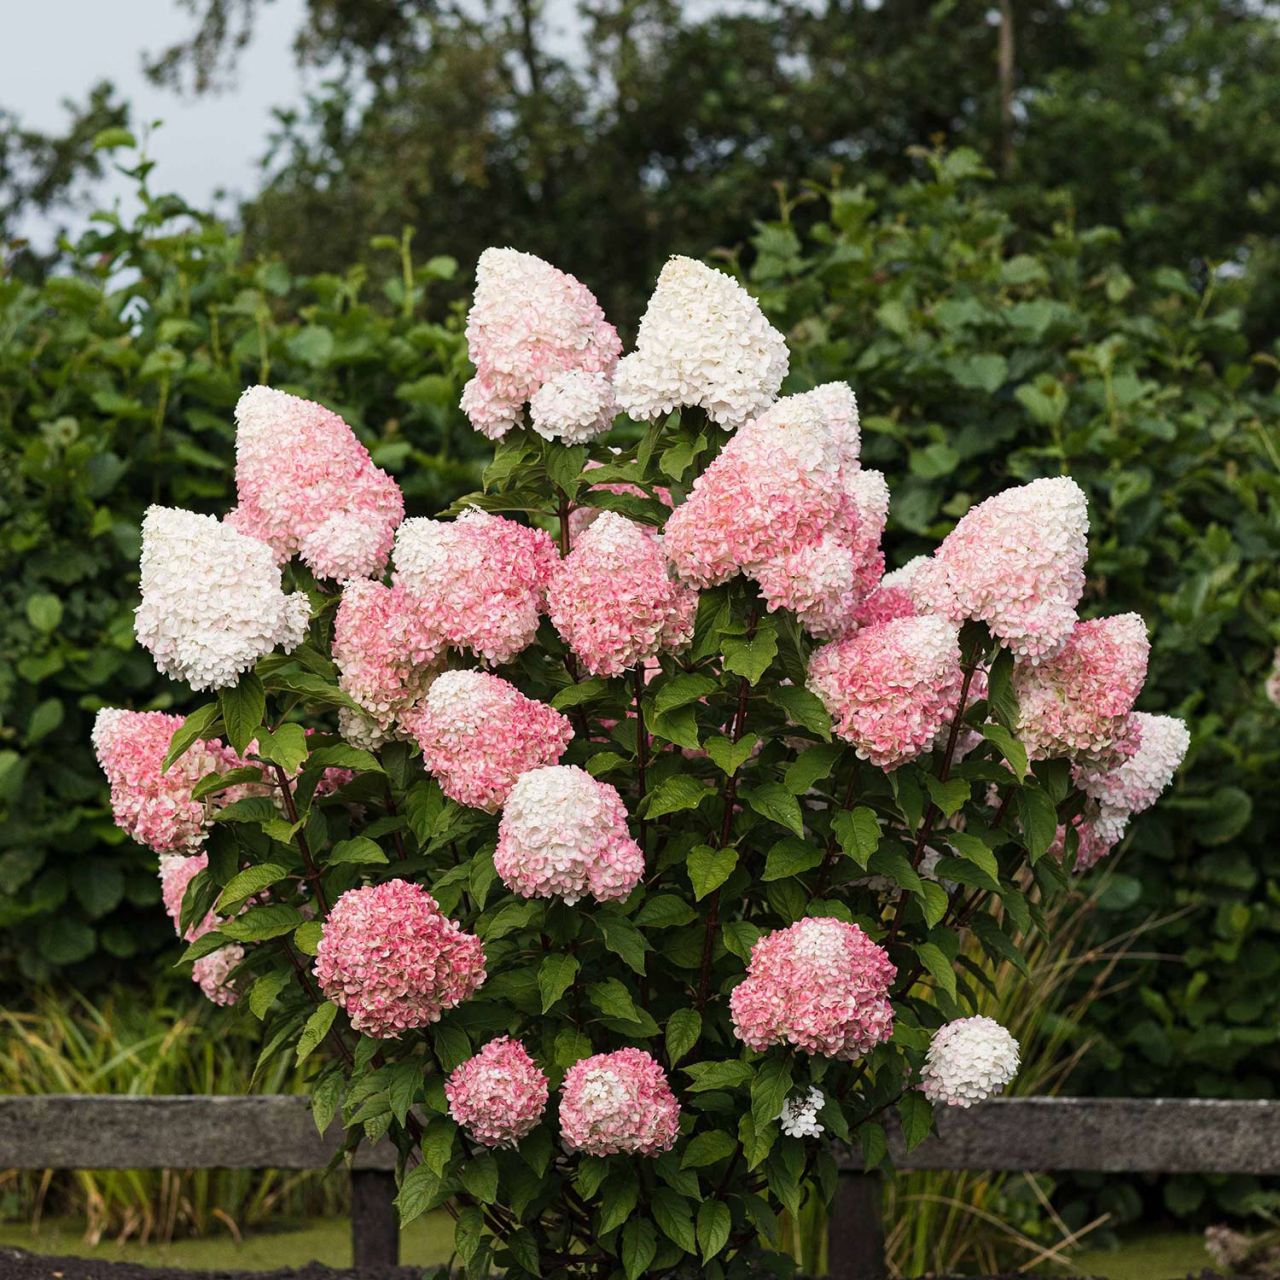 Kategorie <b>Blütensträucher und Ziergehölze </b> - Rispenhortensie 'Pink & Rose' ® - Hydrangea paniculata 'Pink & Rose' ®